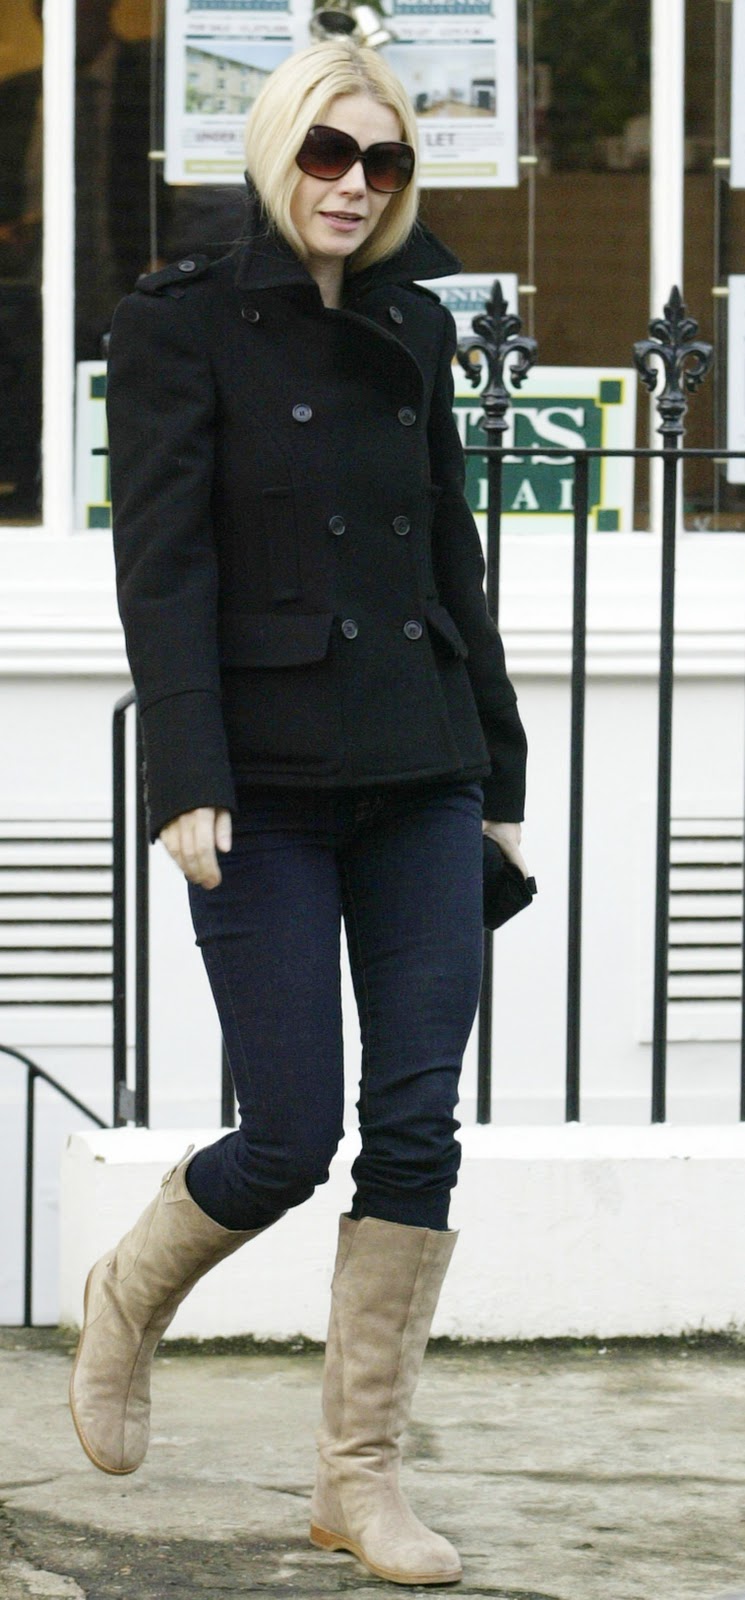 Lady Short Legs: Gwyneth Paltrow